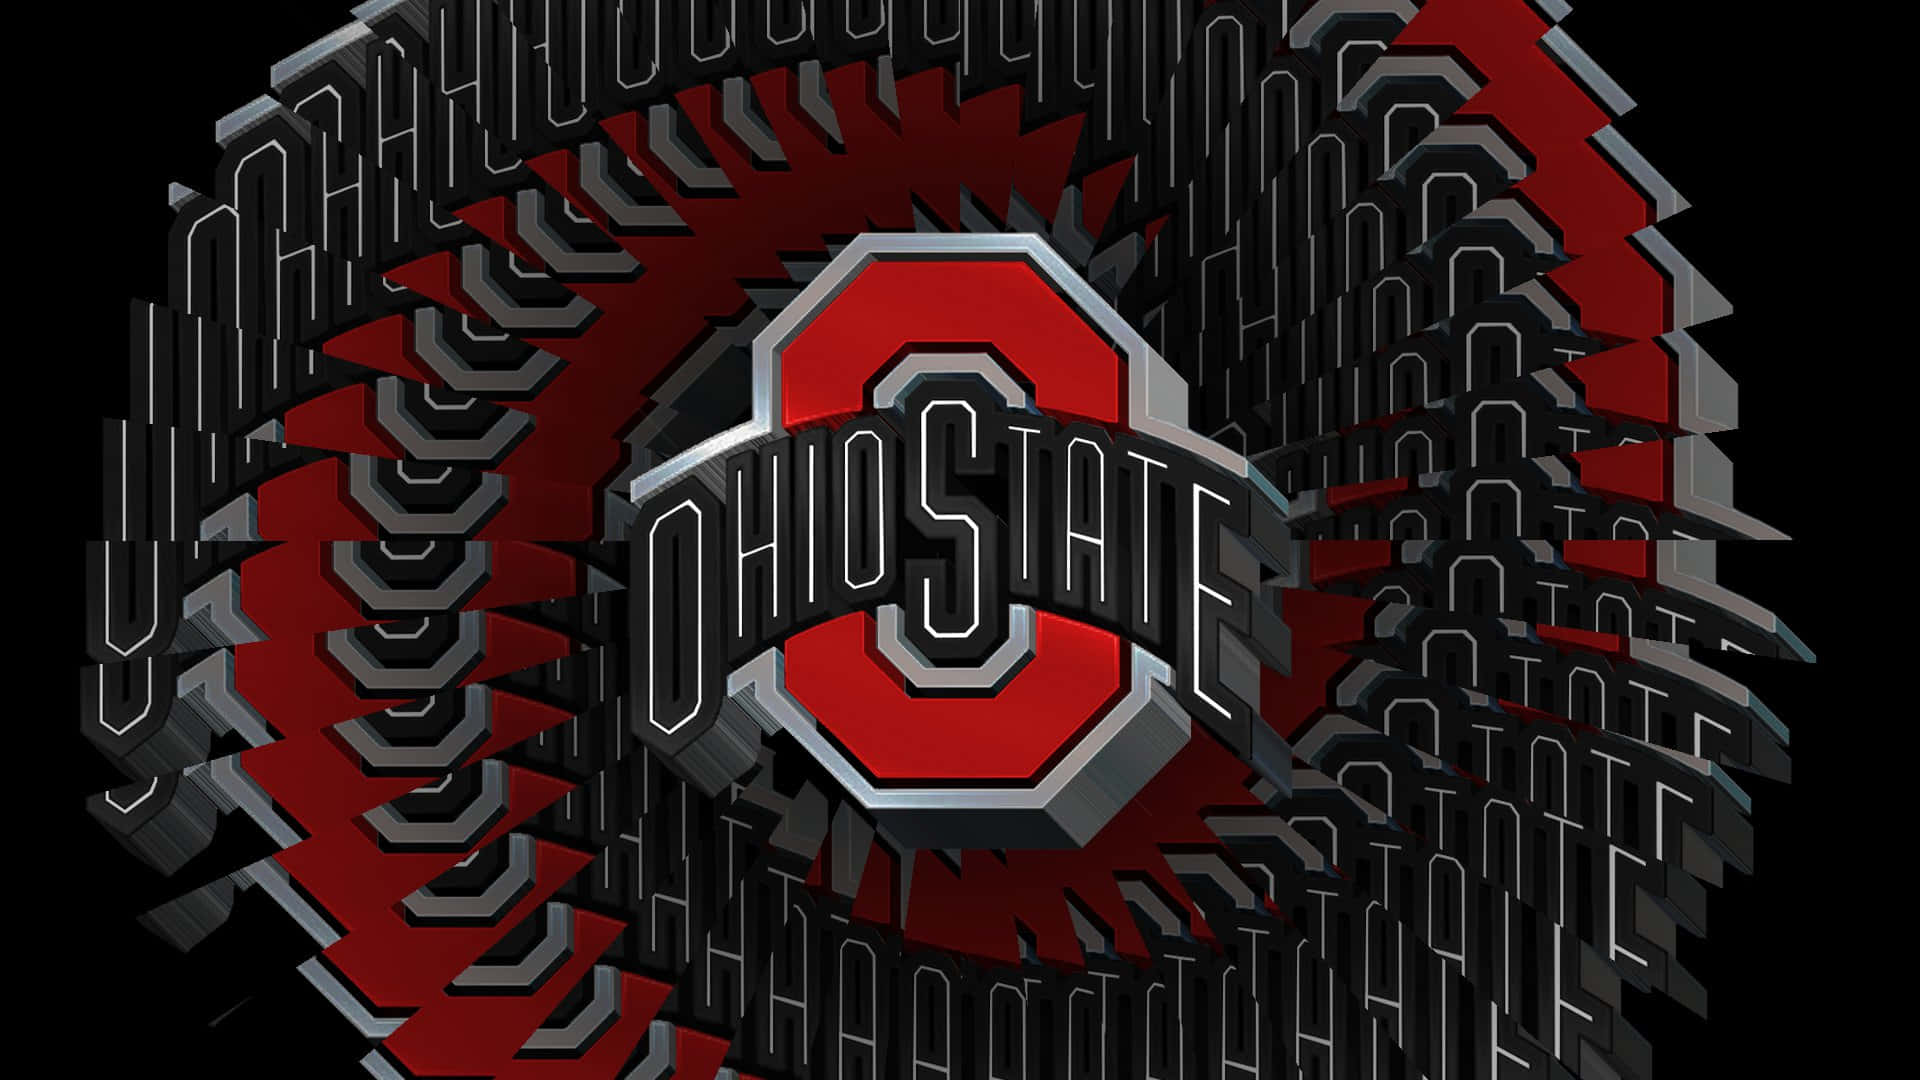 Diseñográfico Distorsionado Del Logotipo De Ohio State Football. Fondo de pantalla